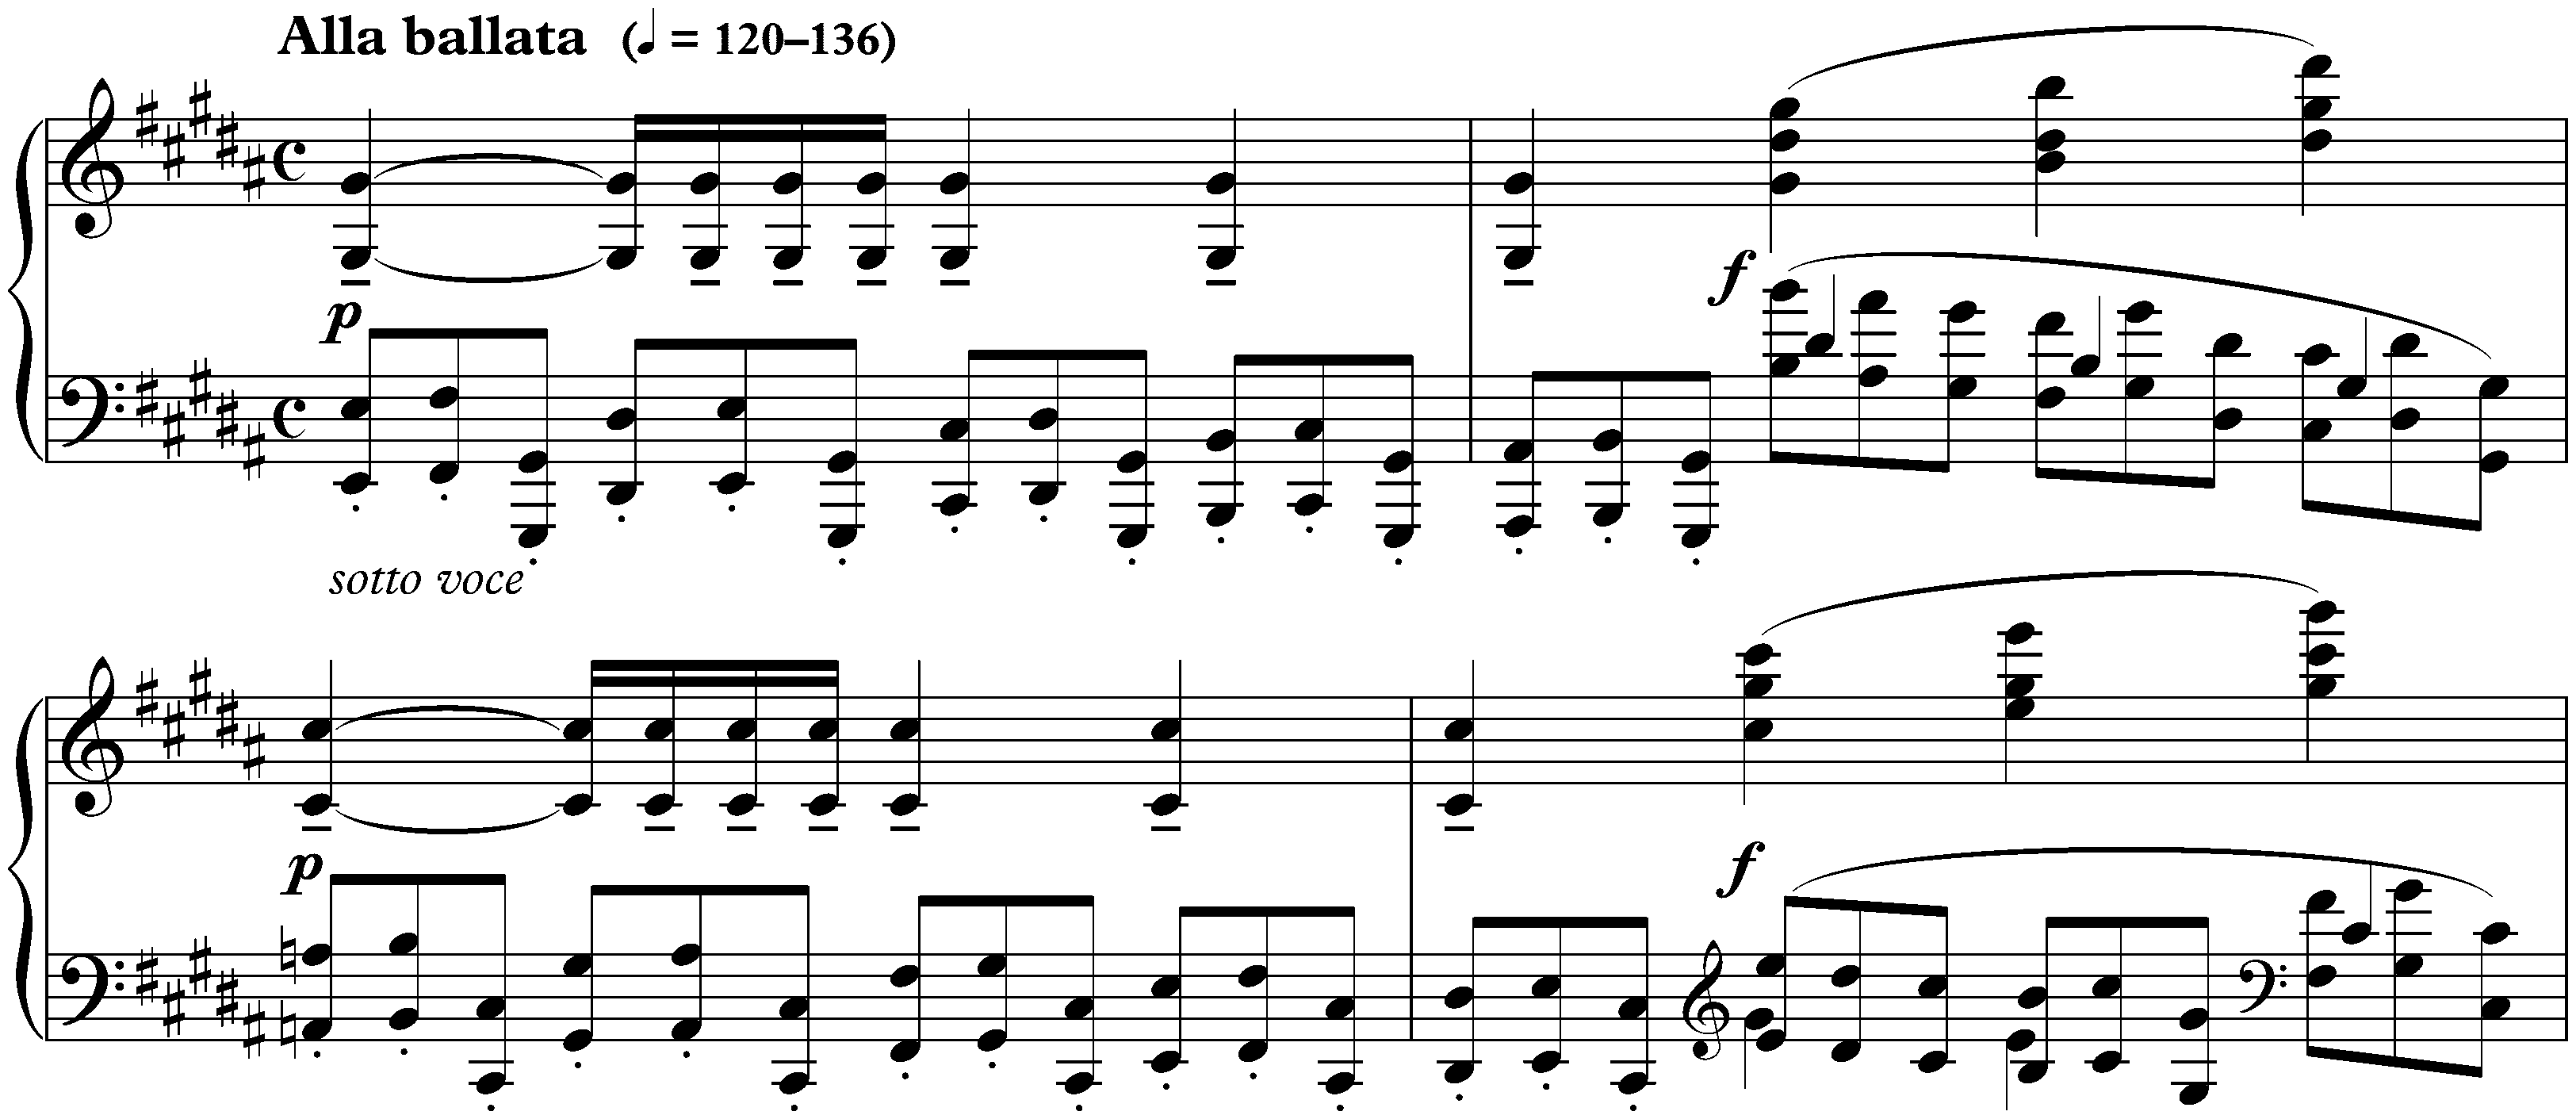 Douze Études, op. 8; 9. G-sharp minor